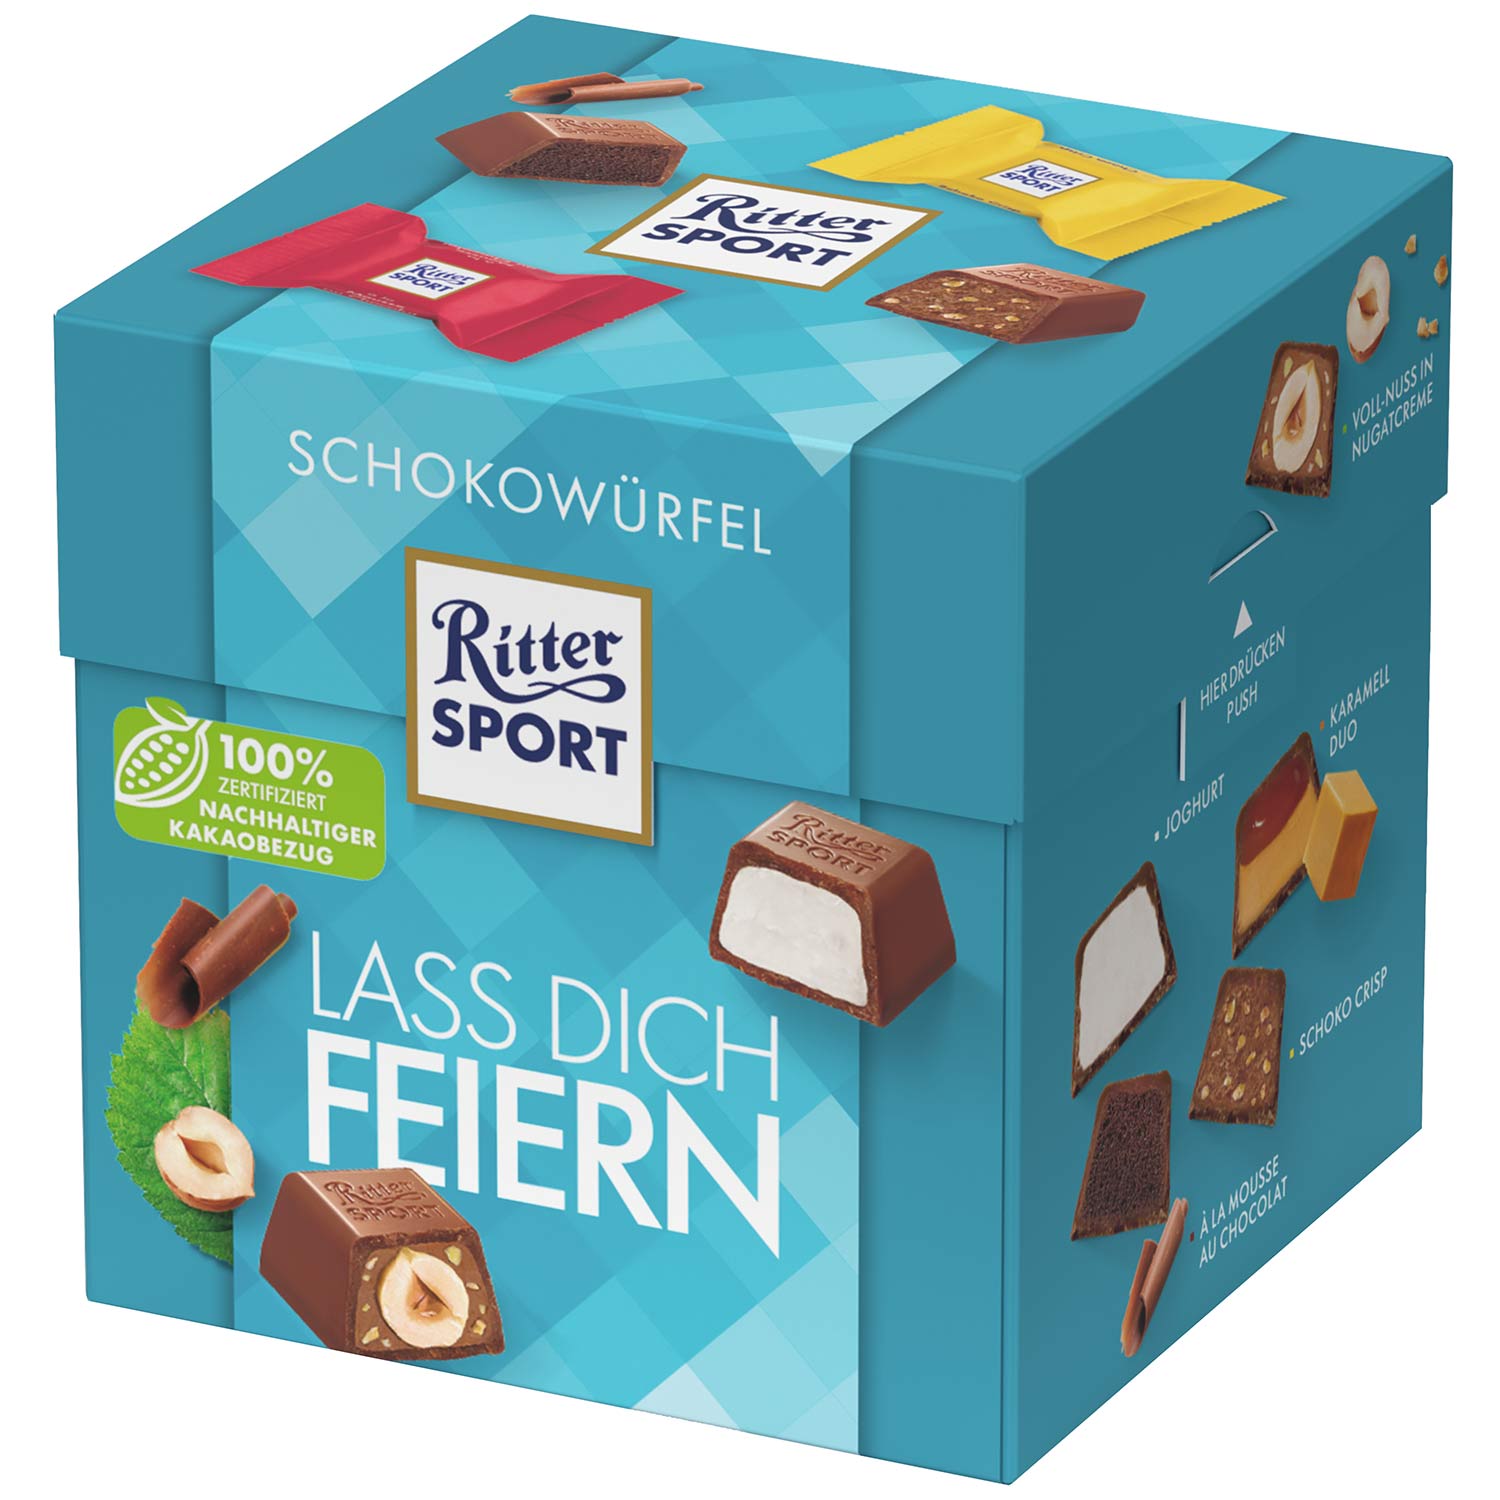 Ritter Sport čokoládová kostka - párty mix 22 ks, 176 g - originál z Německa